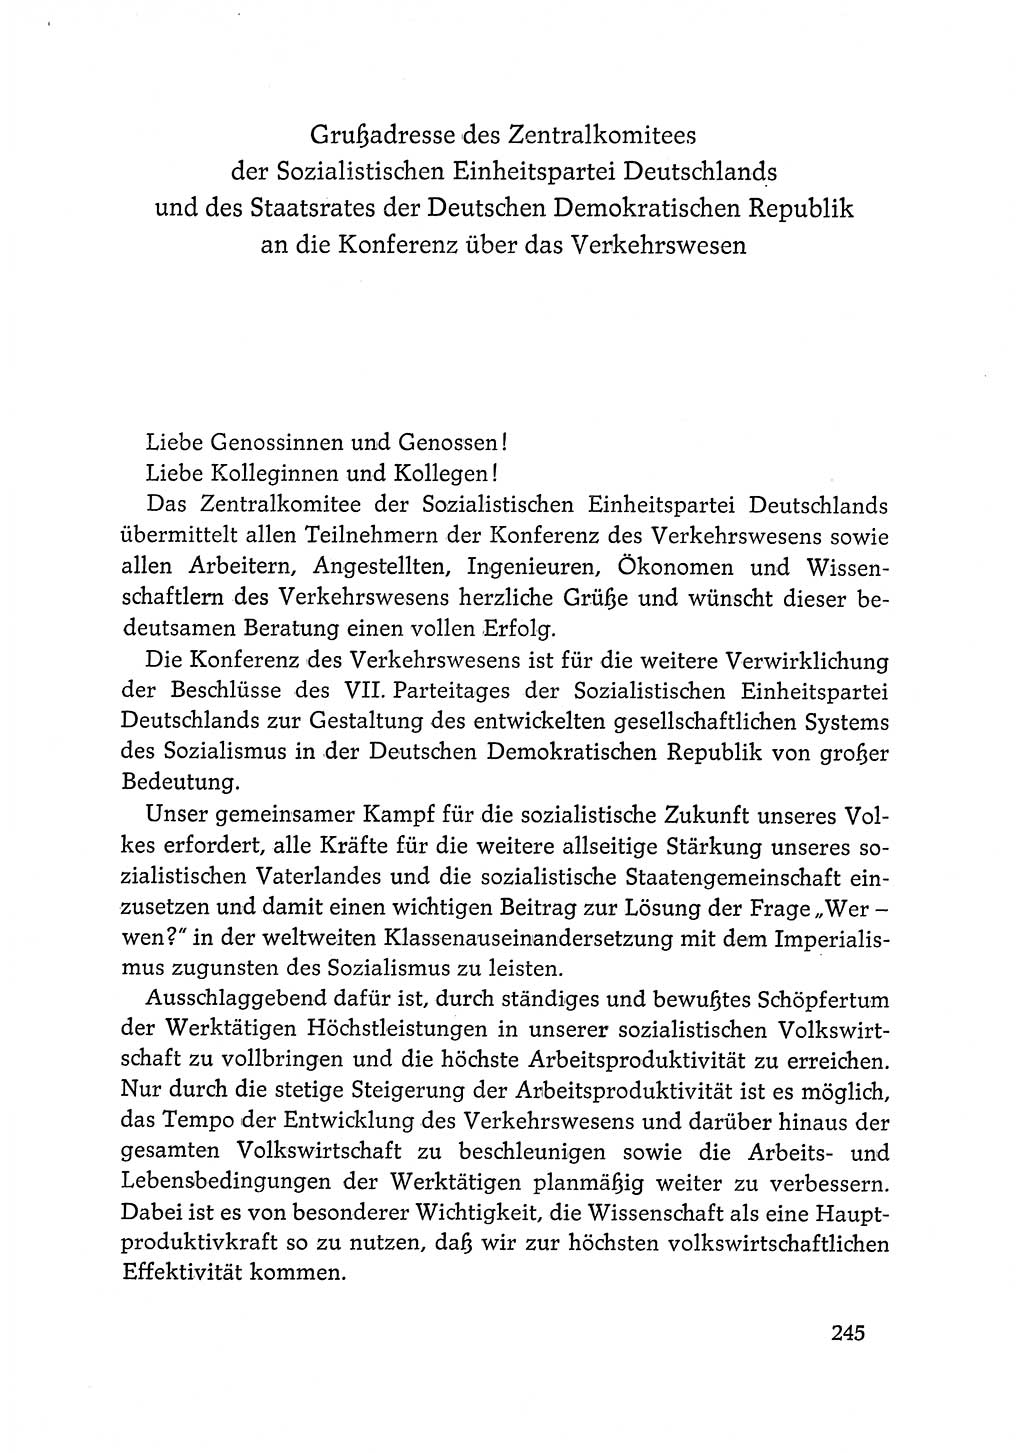 Dokumente der Sozialistischen Einheitspartei Deutschlands (SED) [Deutsche Demokratische Republik (DDR)] 1968-1969, Seite 245 (Dok. SED DDR 1968-1969, S. 245)